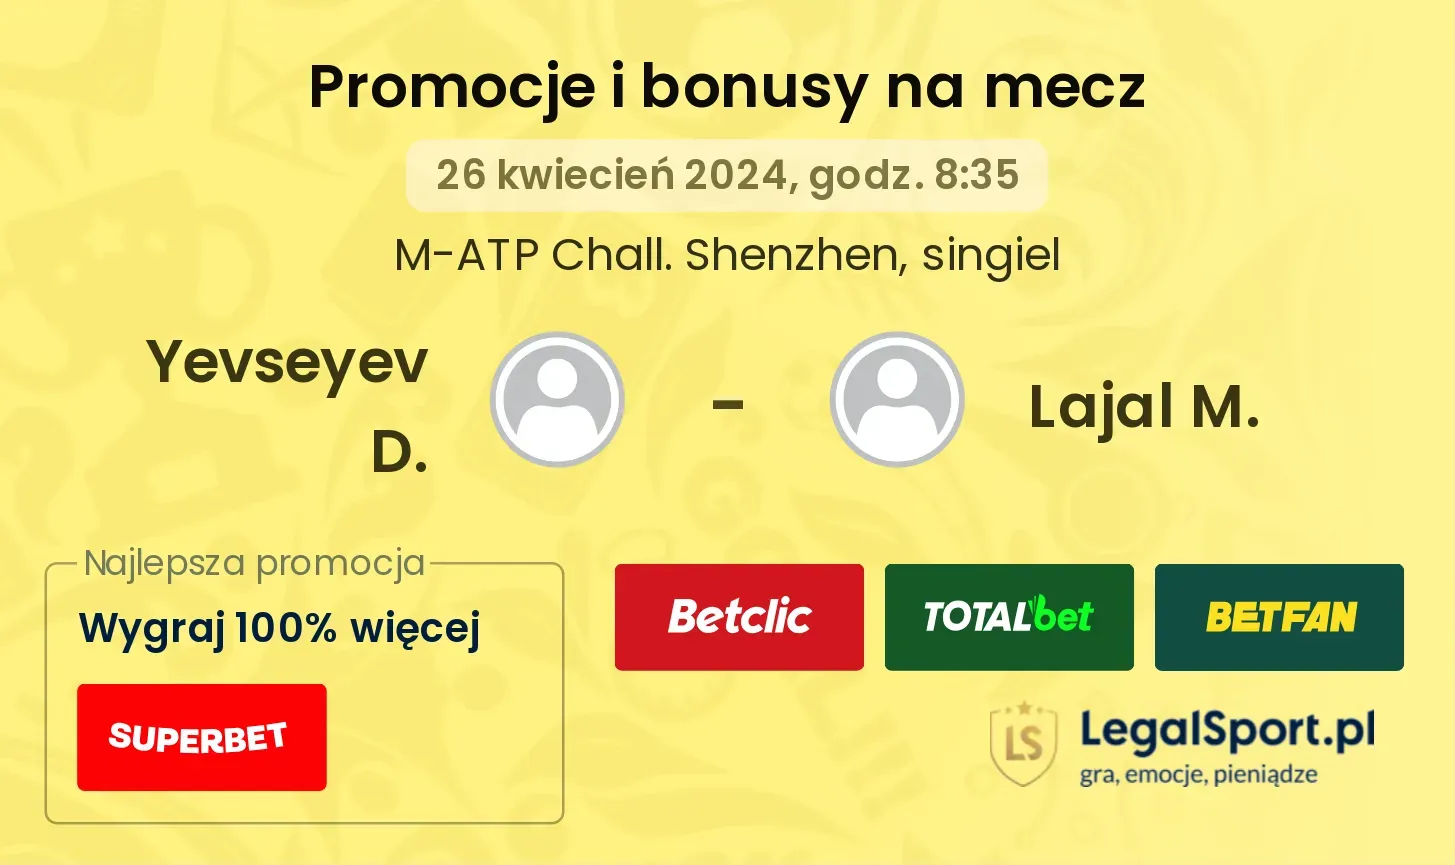 Yevseyev D. - Lajal M. promocje bonusy na mecz